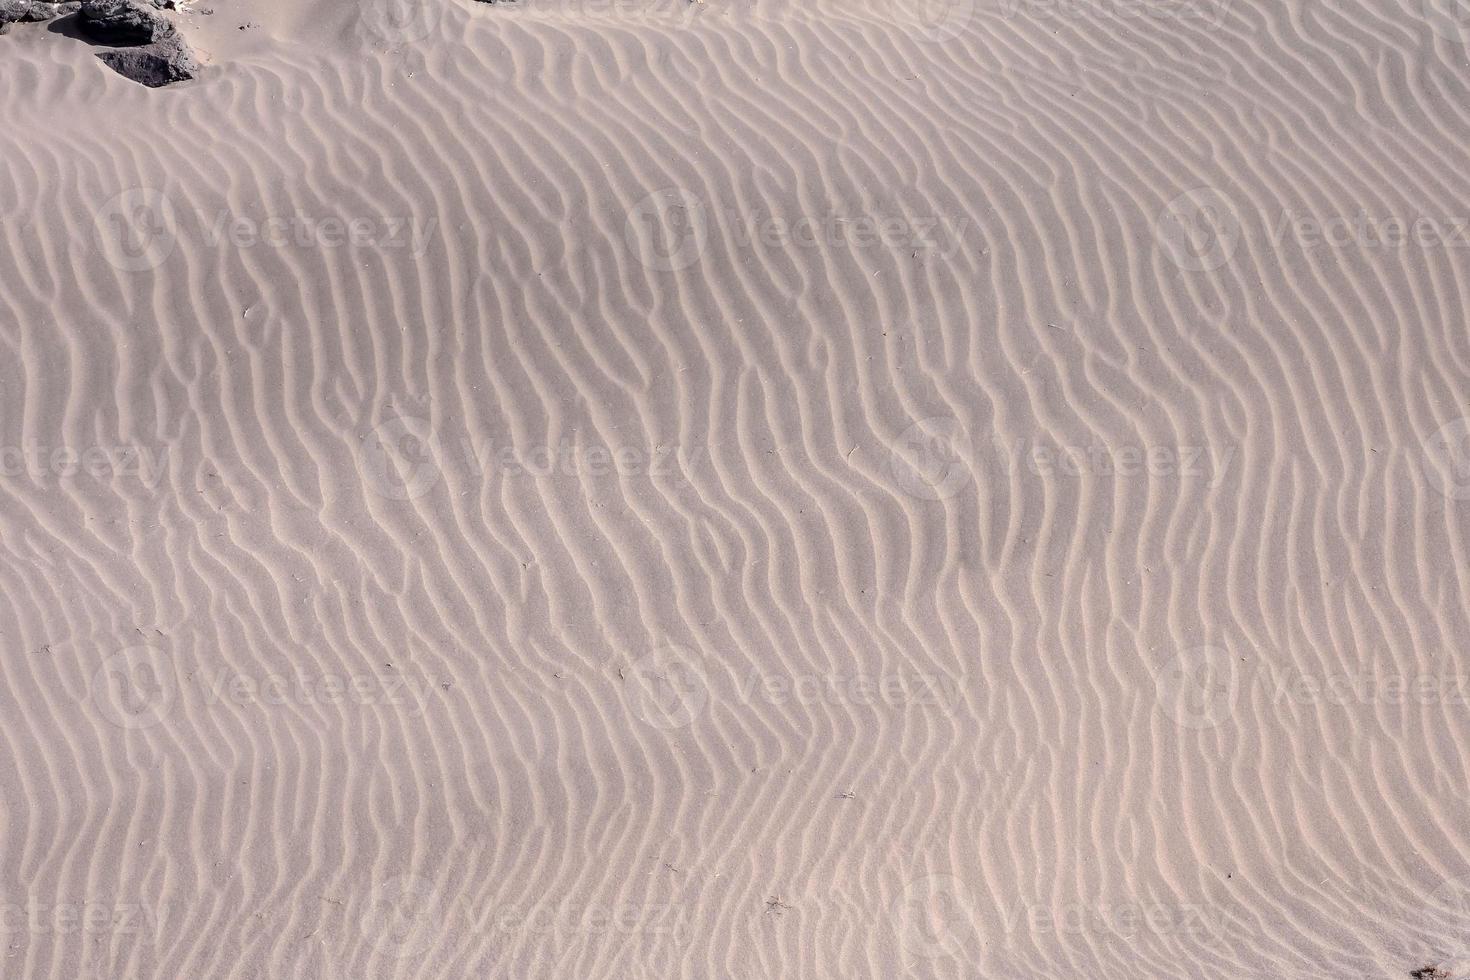 Sand kräuselt Textur foto